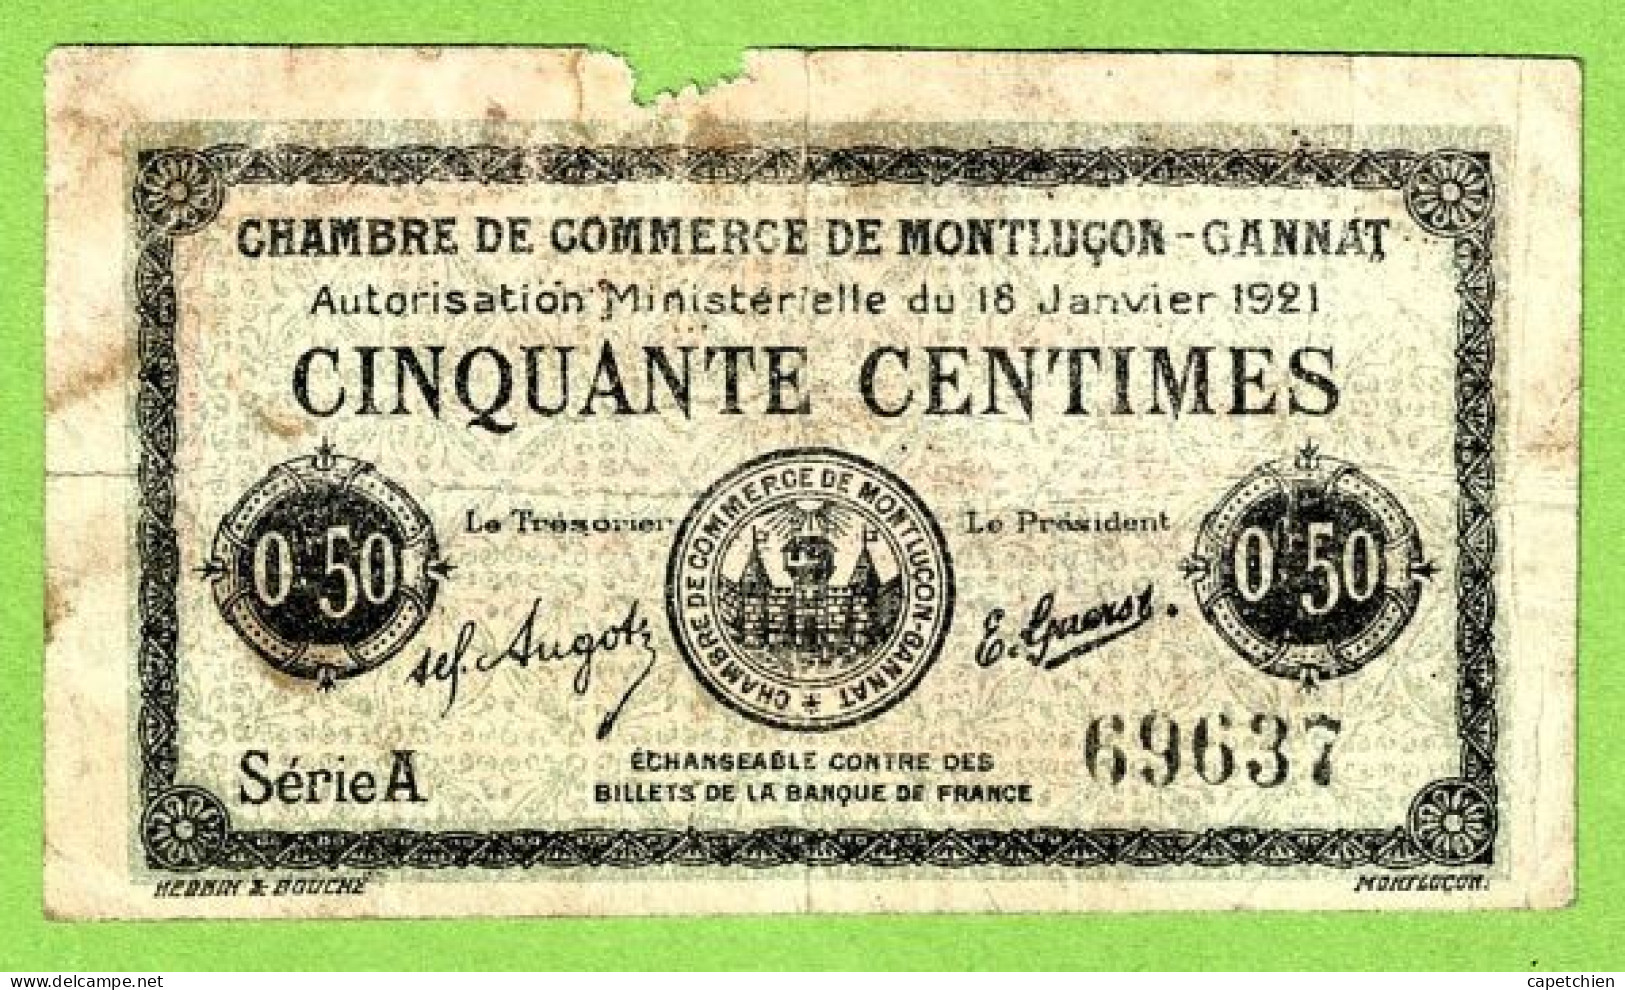 FRANCE / CHAMBRE De COMMERCE De MONTLUÇON - GANNAT /50 CENTIMES / 18 JANVIER 1921  N° 69637 / SERIE A - Cámara De Comercio